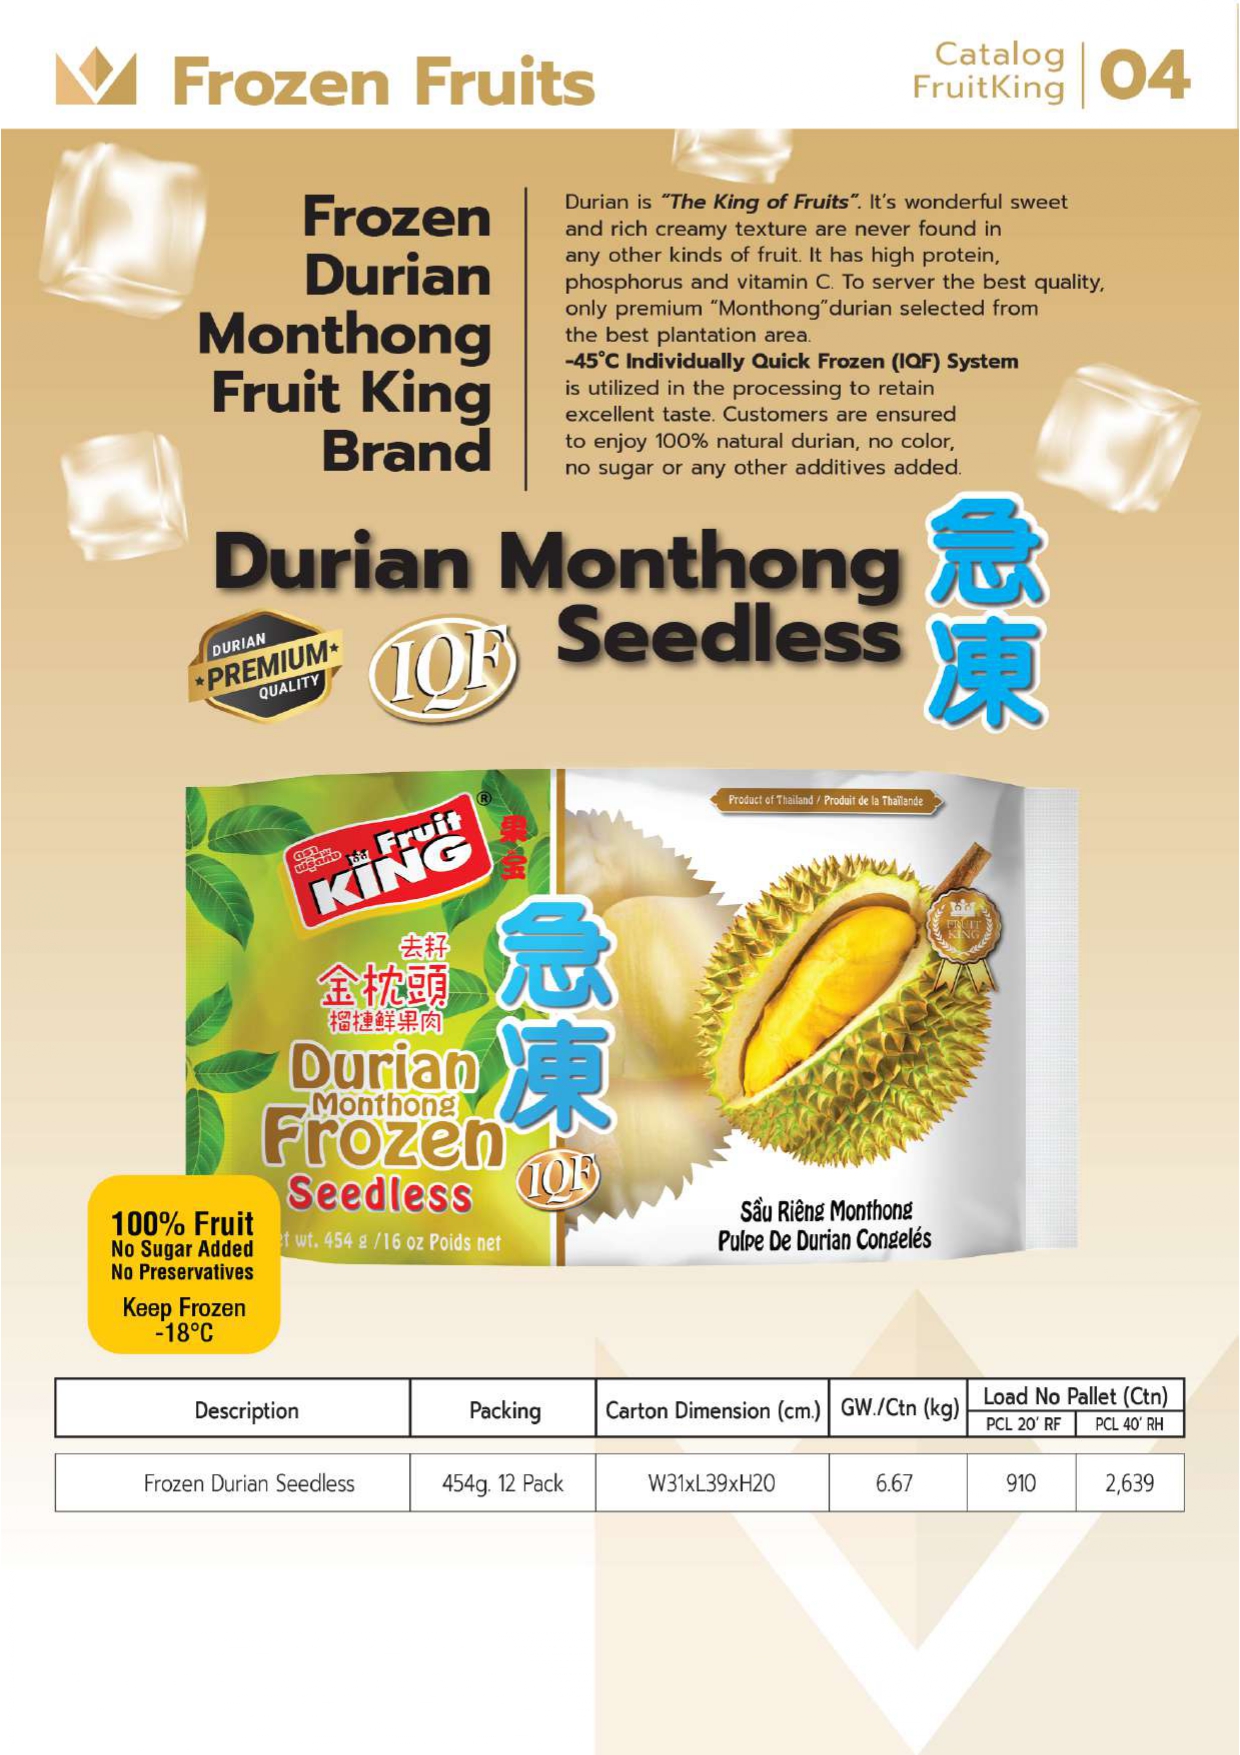 Durian Frozen Seedless